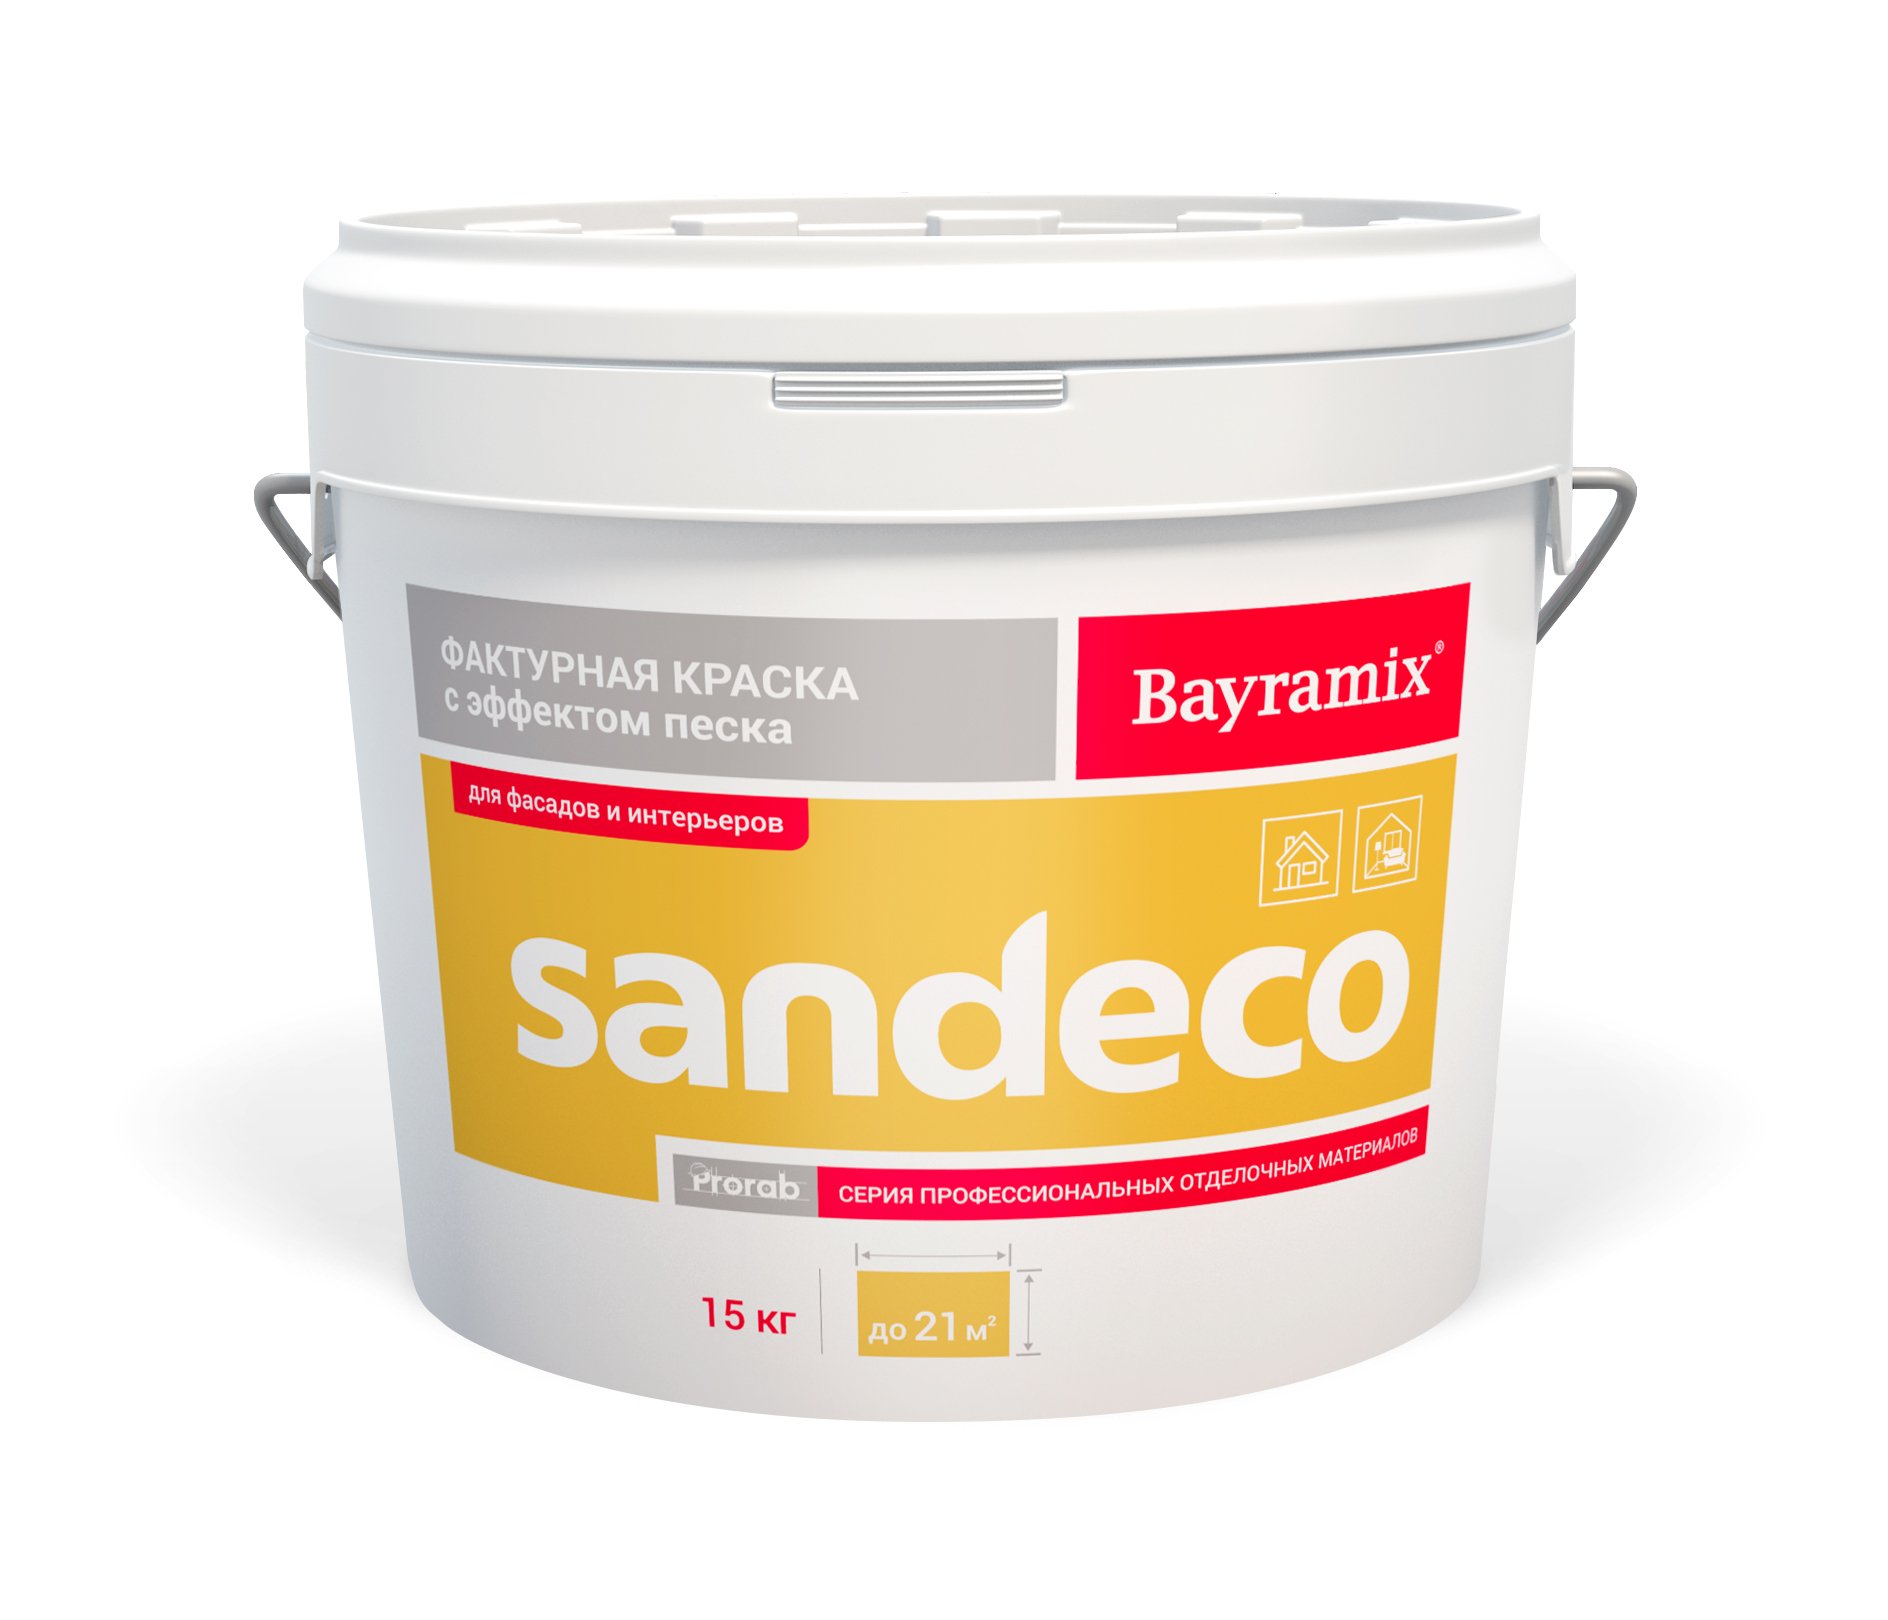 Фактурная краска Bayramix Sandeco для наружных и внутренних работ, 15 кг фактурная полиакриловая водно дисперсионная краска для наружных и внутренних работ ореол